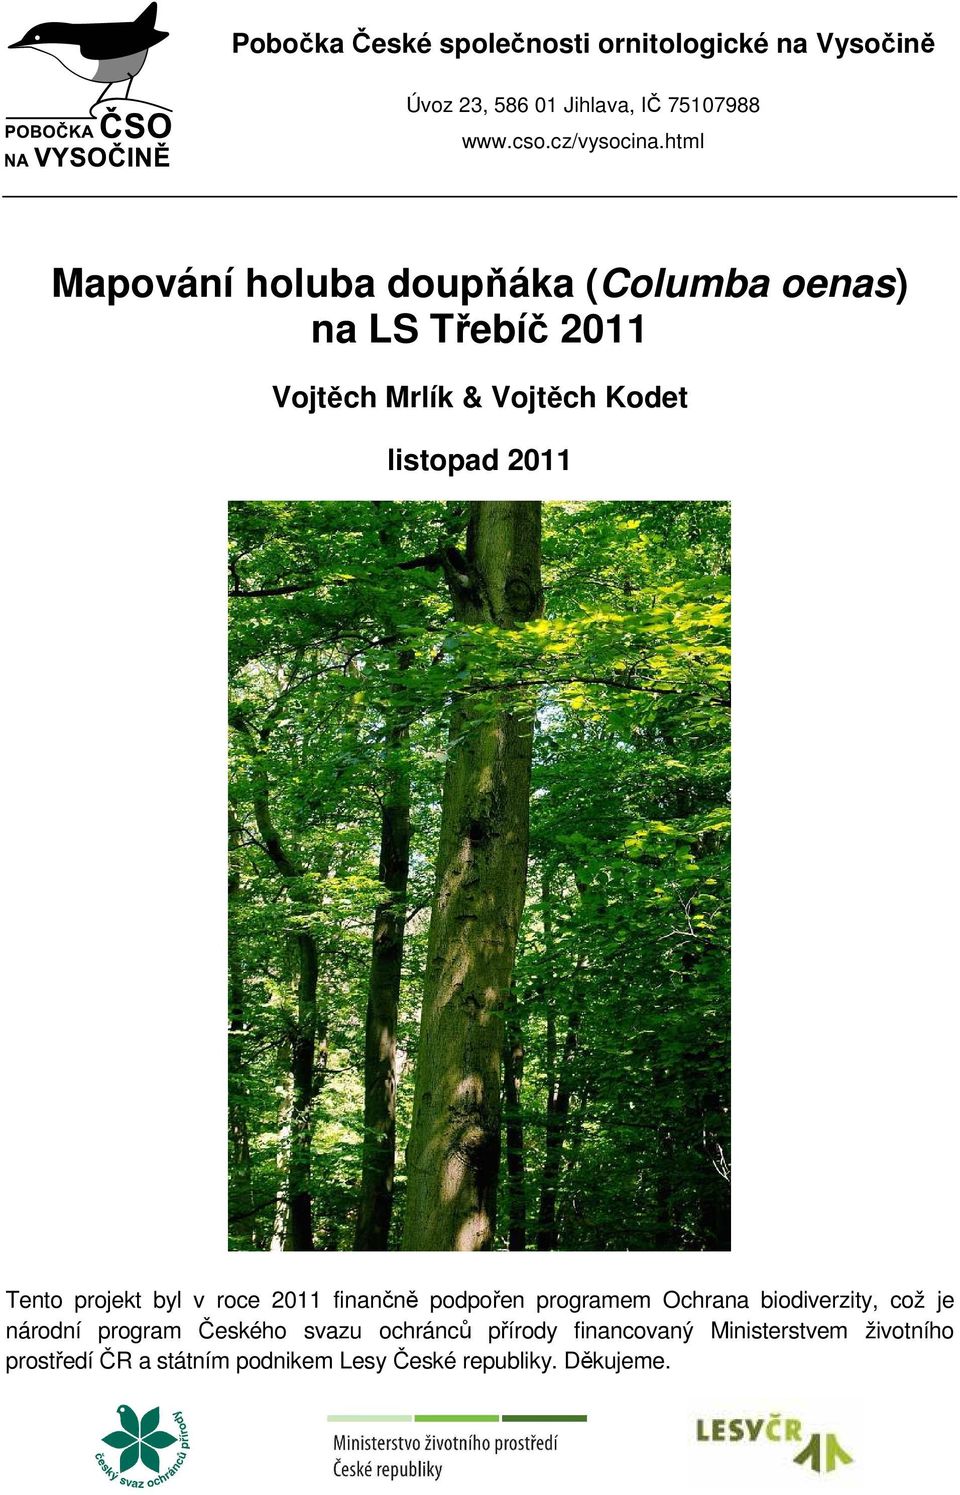 Tento projekt byl v roce 2011 finančně podpořen programem Ochrana biodiverzity, což je národní program Českého